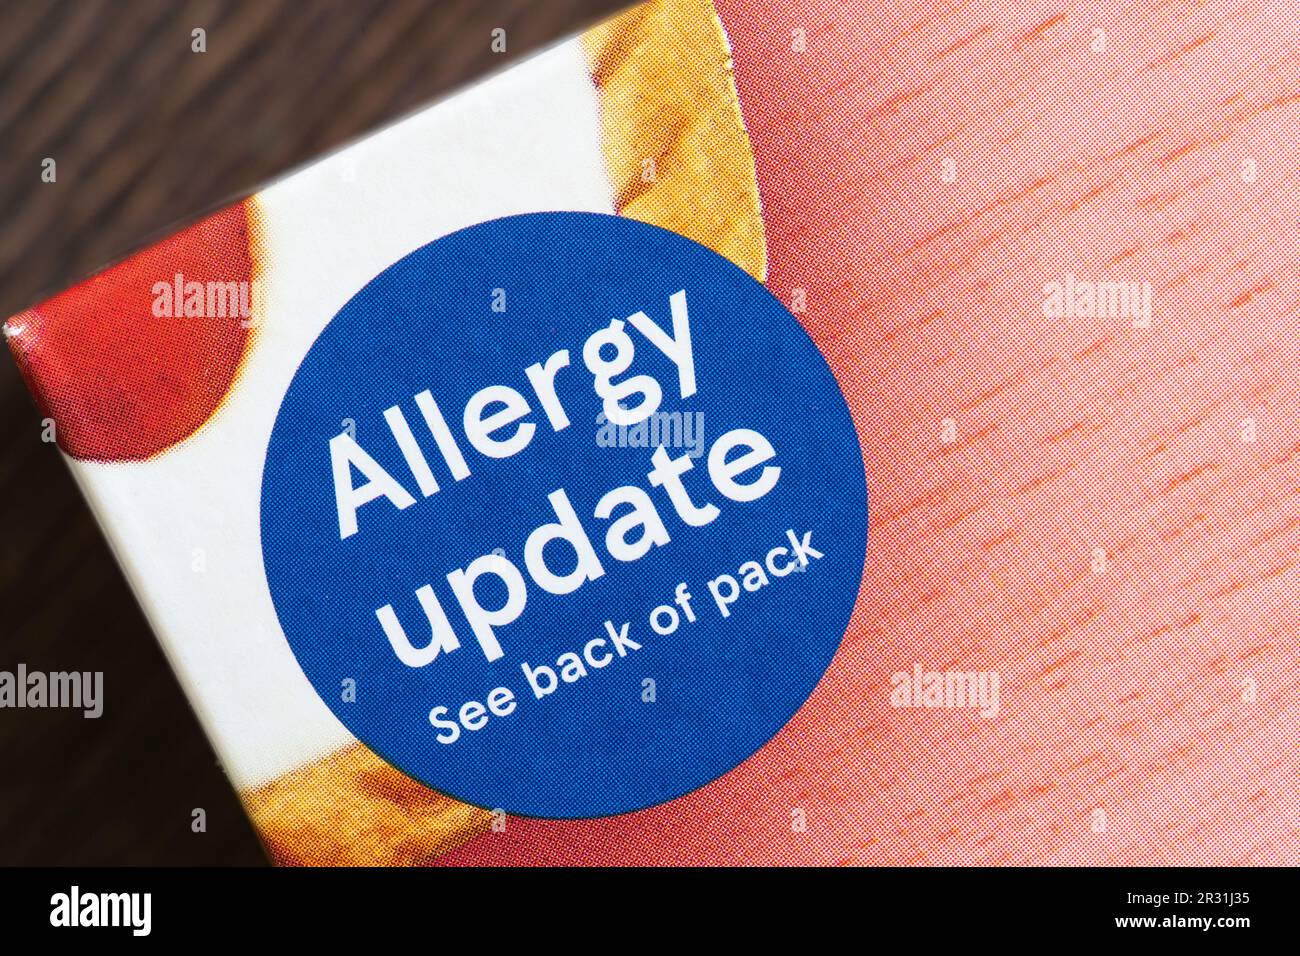 Etichetta di aggiornamento allergia sul pacchetto di crostate in ciliegio del marchio Tesco, Inghilterra. Concetto: Allergie alimentari, allergia che causa gli alimenti, reazione allergica Foto Stock